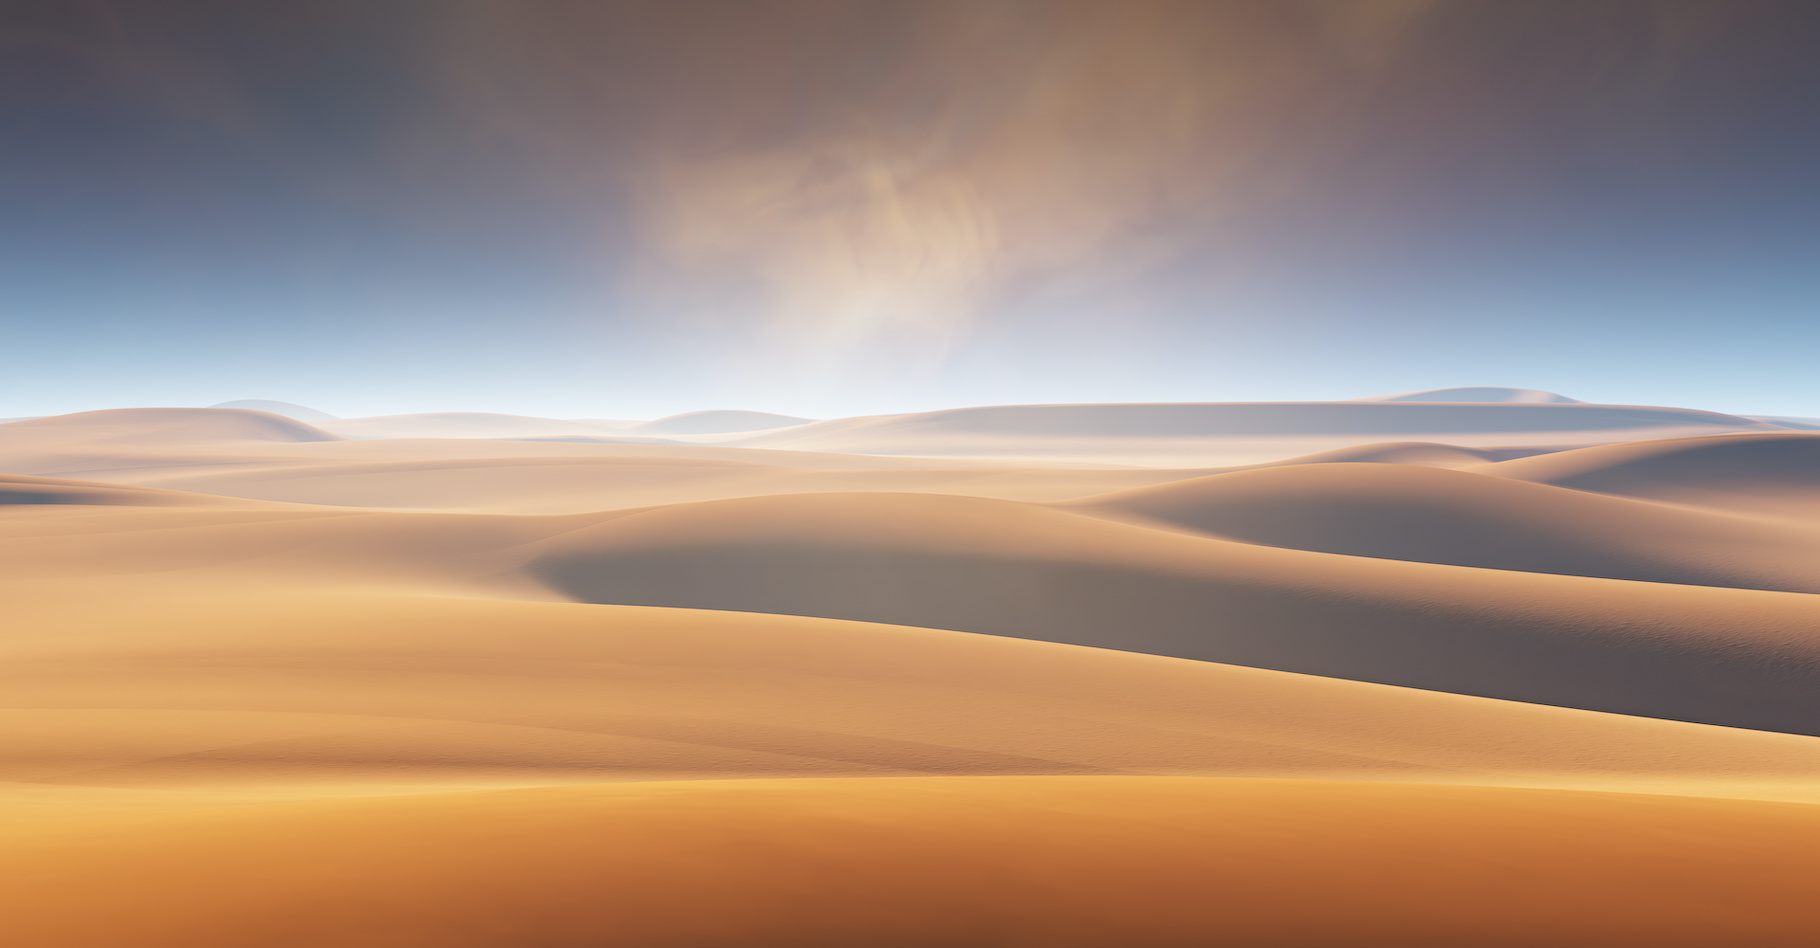 Lorsque les conditions sont réunies, des poussières de sable du Sahara peuvent atteindre la France et teinter notre ciel d’orange. Avec quelques conséquences fâcheuses sur la qualité de l'air. © Peter Jurik, Adobe Stock